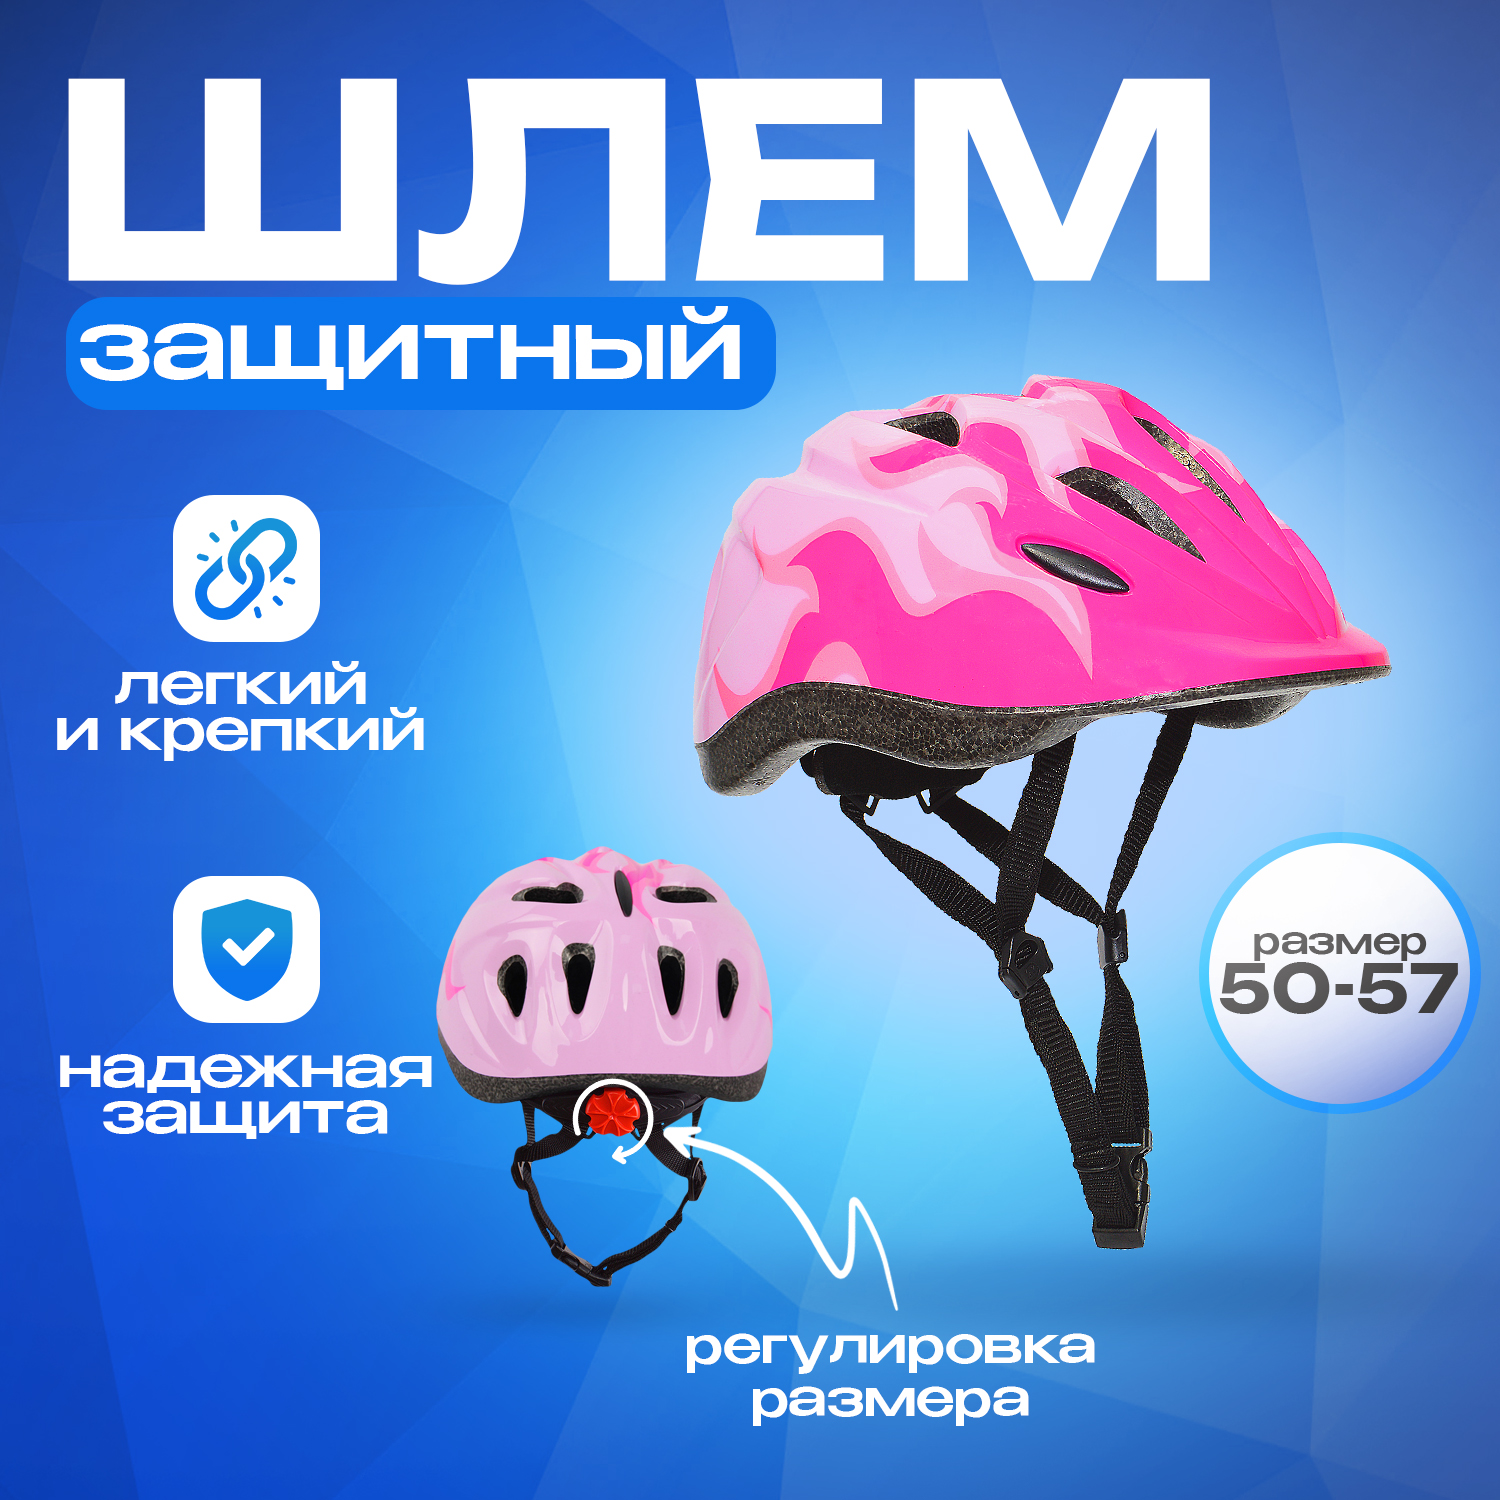 Шлем детский RGX Flame розовый с регулировкой р-р 50-57